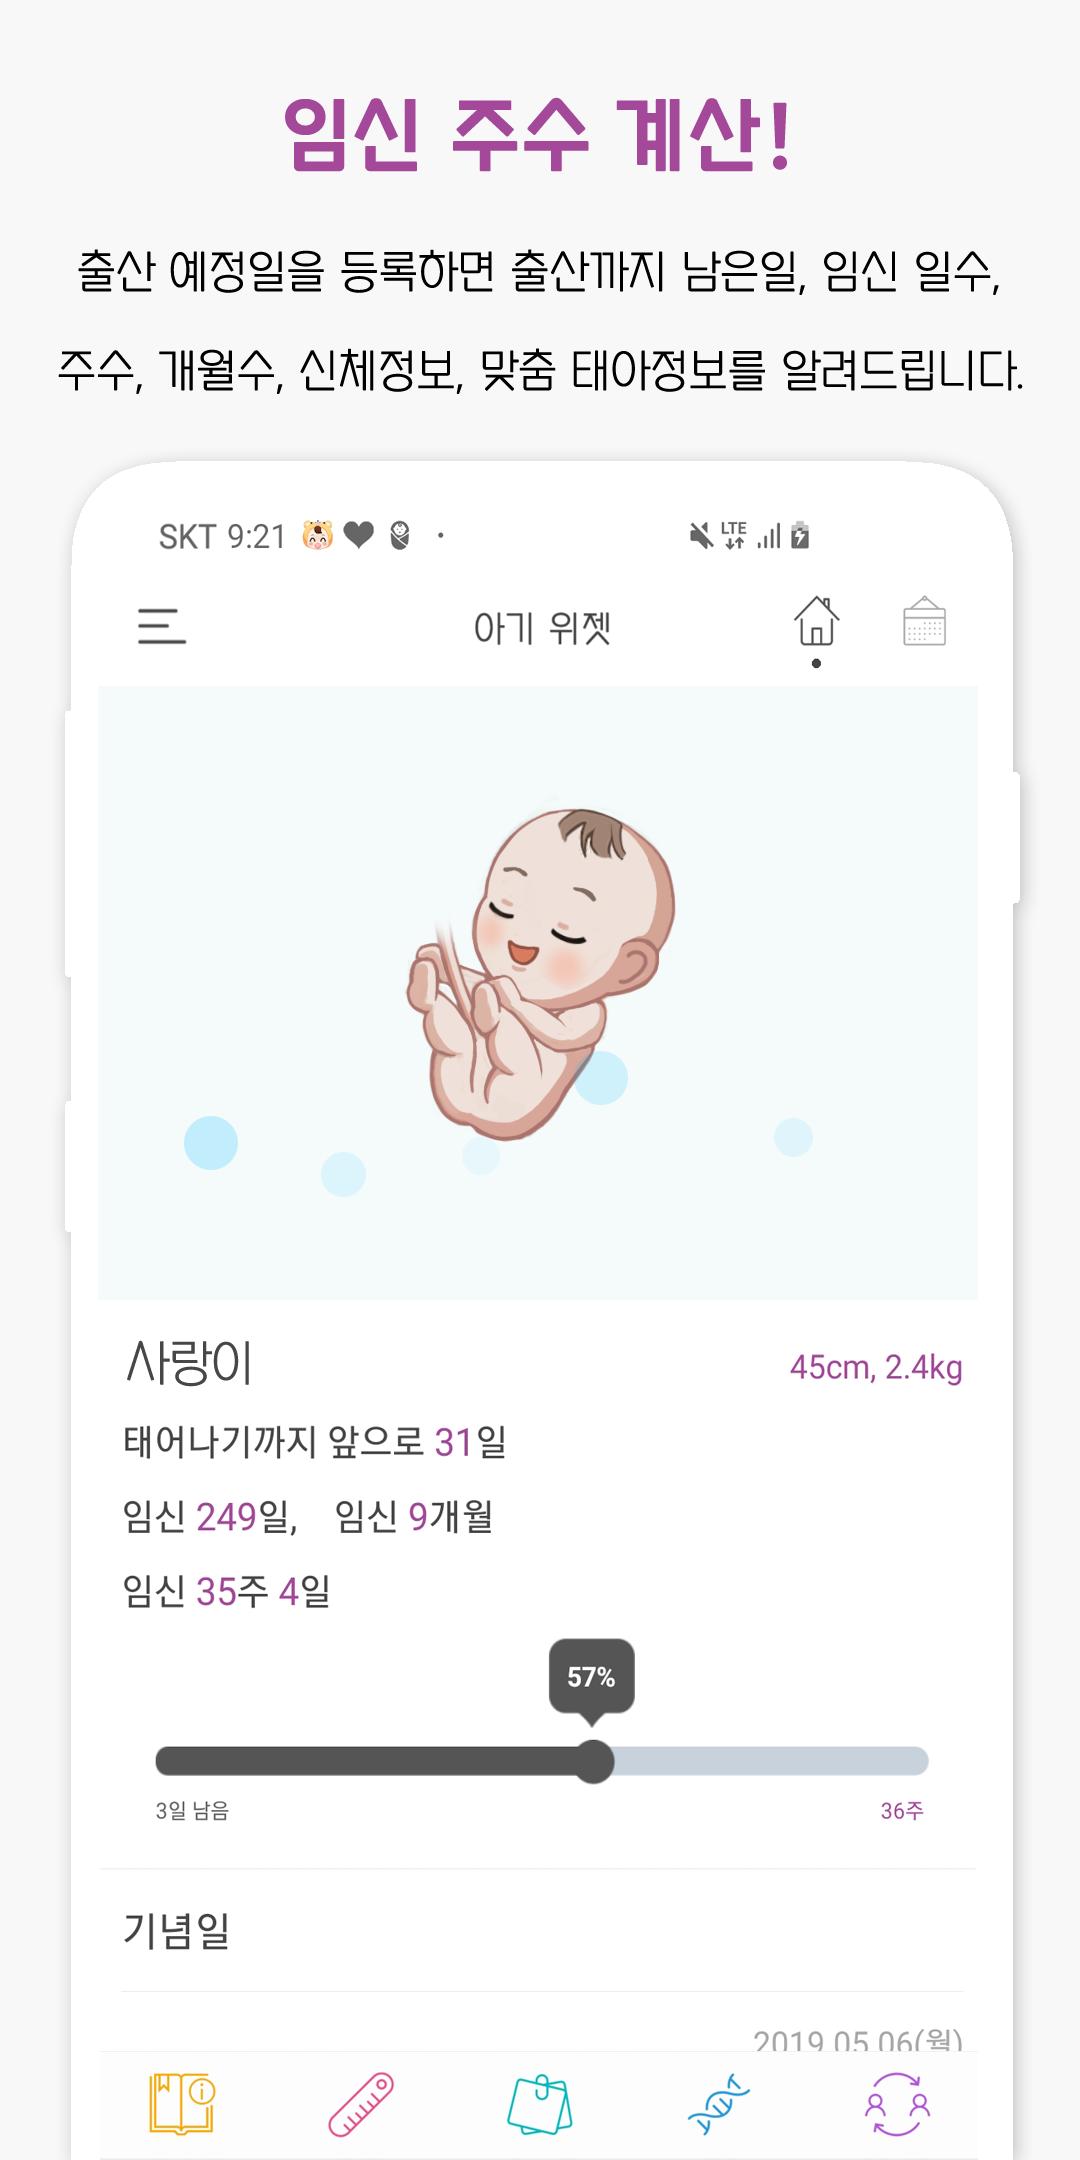 아기 개월수 계산 위젯 : 아기 개월수, 임신 주수 계산, 성장 발달 계산, 육아정보